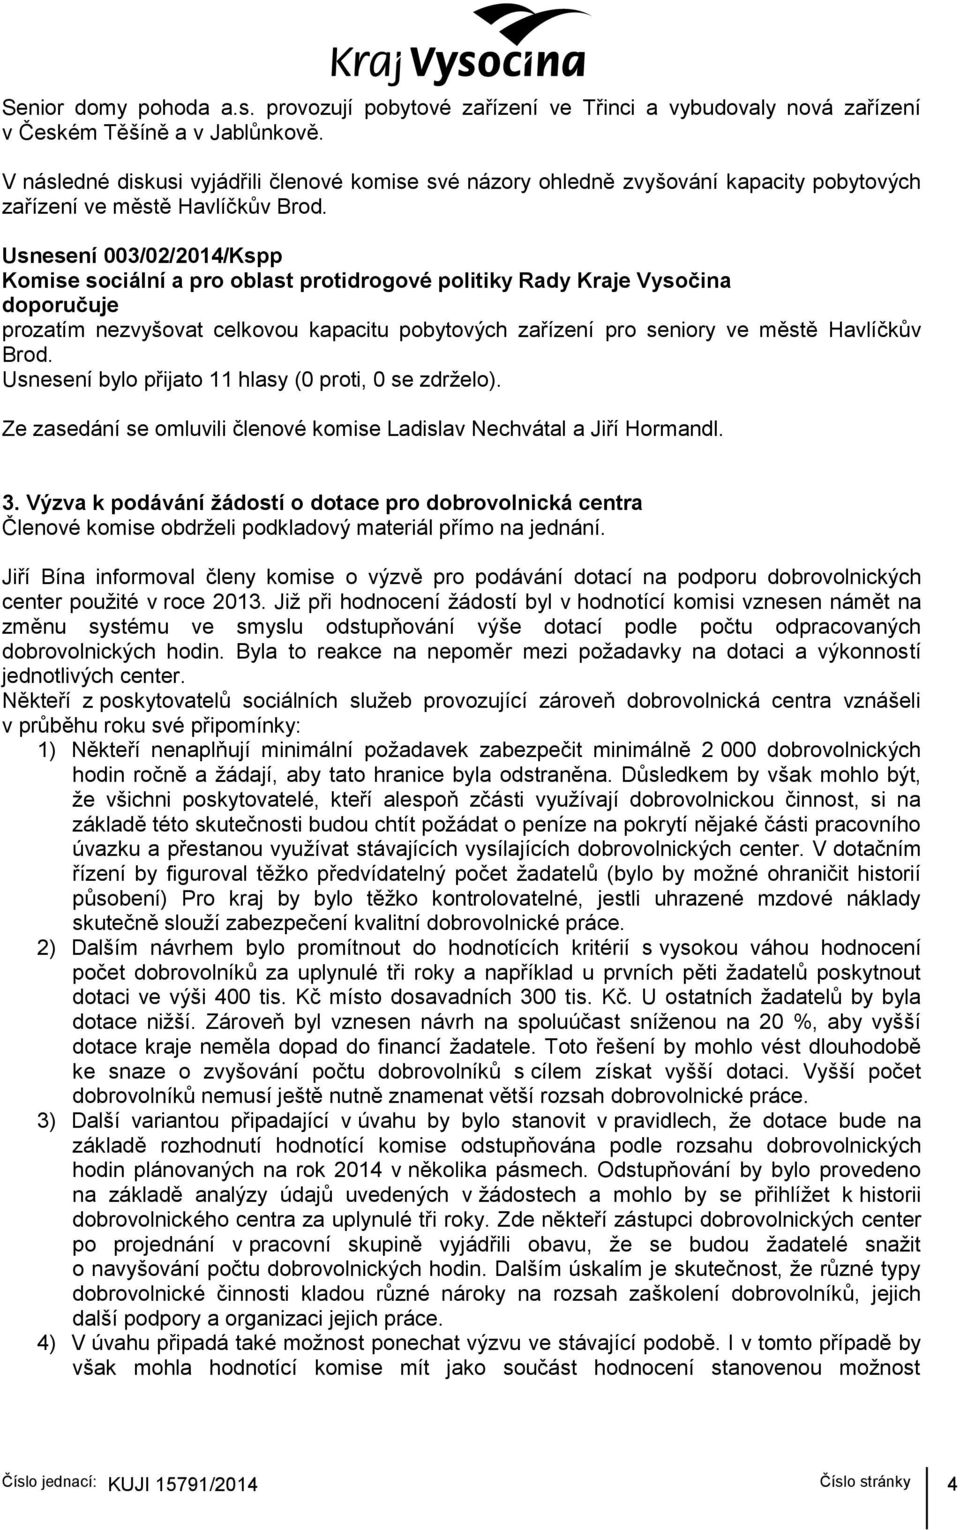 Usnesení 003/02/2014/Kspp Komise sociální a pro oblast protidrogové politiky Rady Kraje Vysočina doporučuje prozatím nezvyšovat celkovou kapacitu pobytových zařízení pro seniory ve městě Havlíčkův